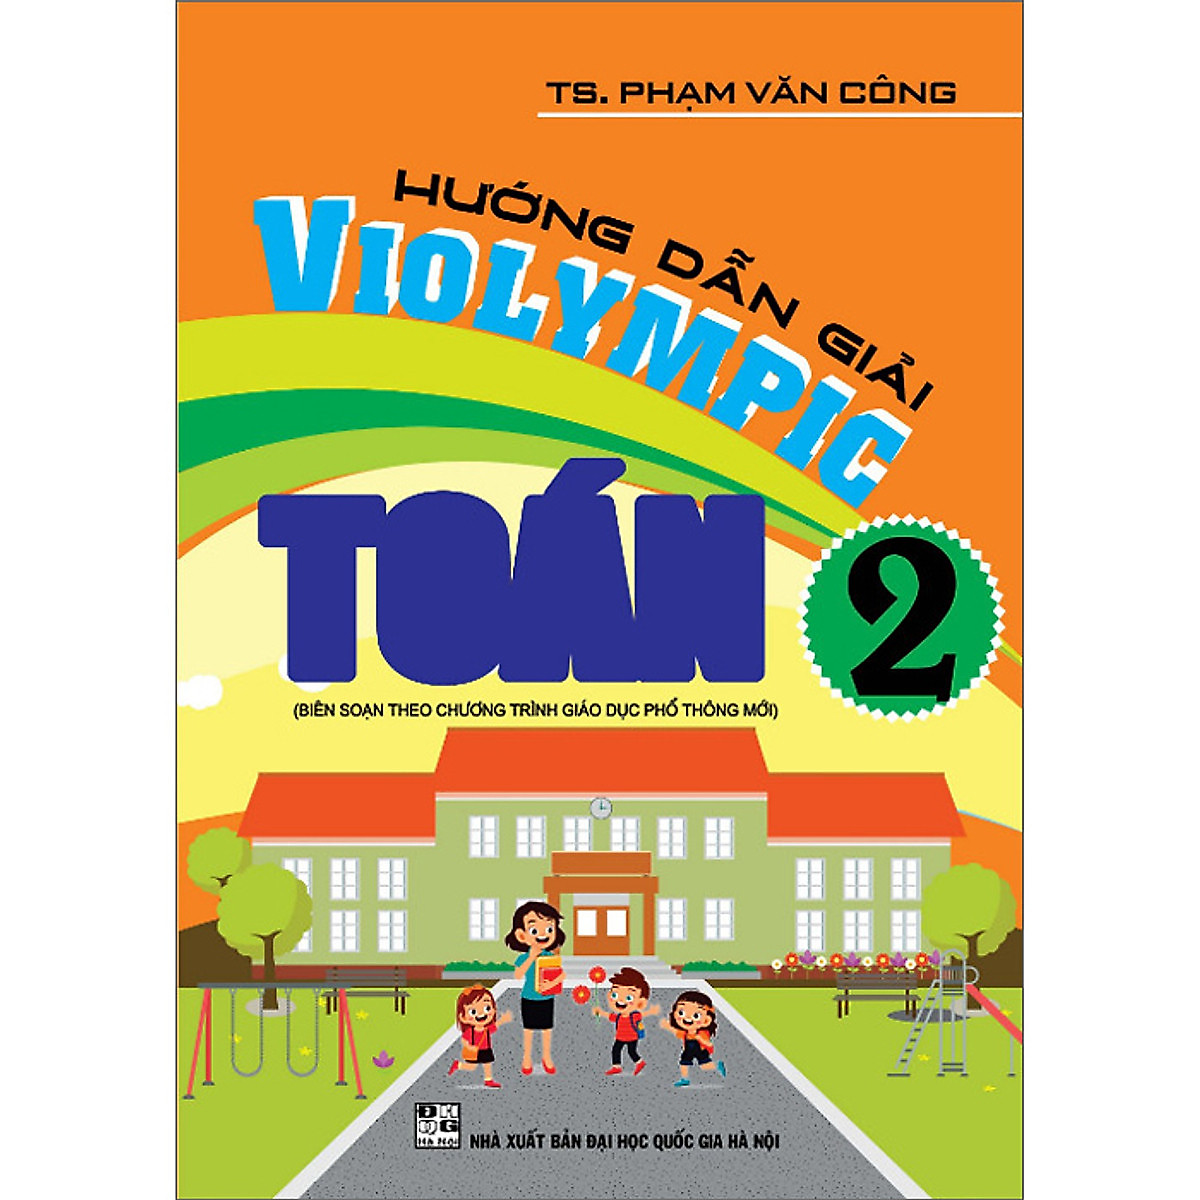 ComBo Bộ Đề Luyện Thi Violympic Trạng Nguyên Tiếng Việt Trên Internet Lớp 2 + Hướng Dẫn Giải Violympic Toán 2 ( bộ 2 cuốn )